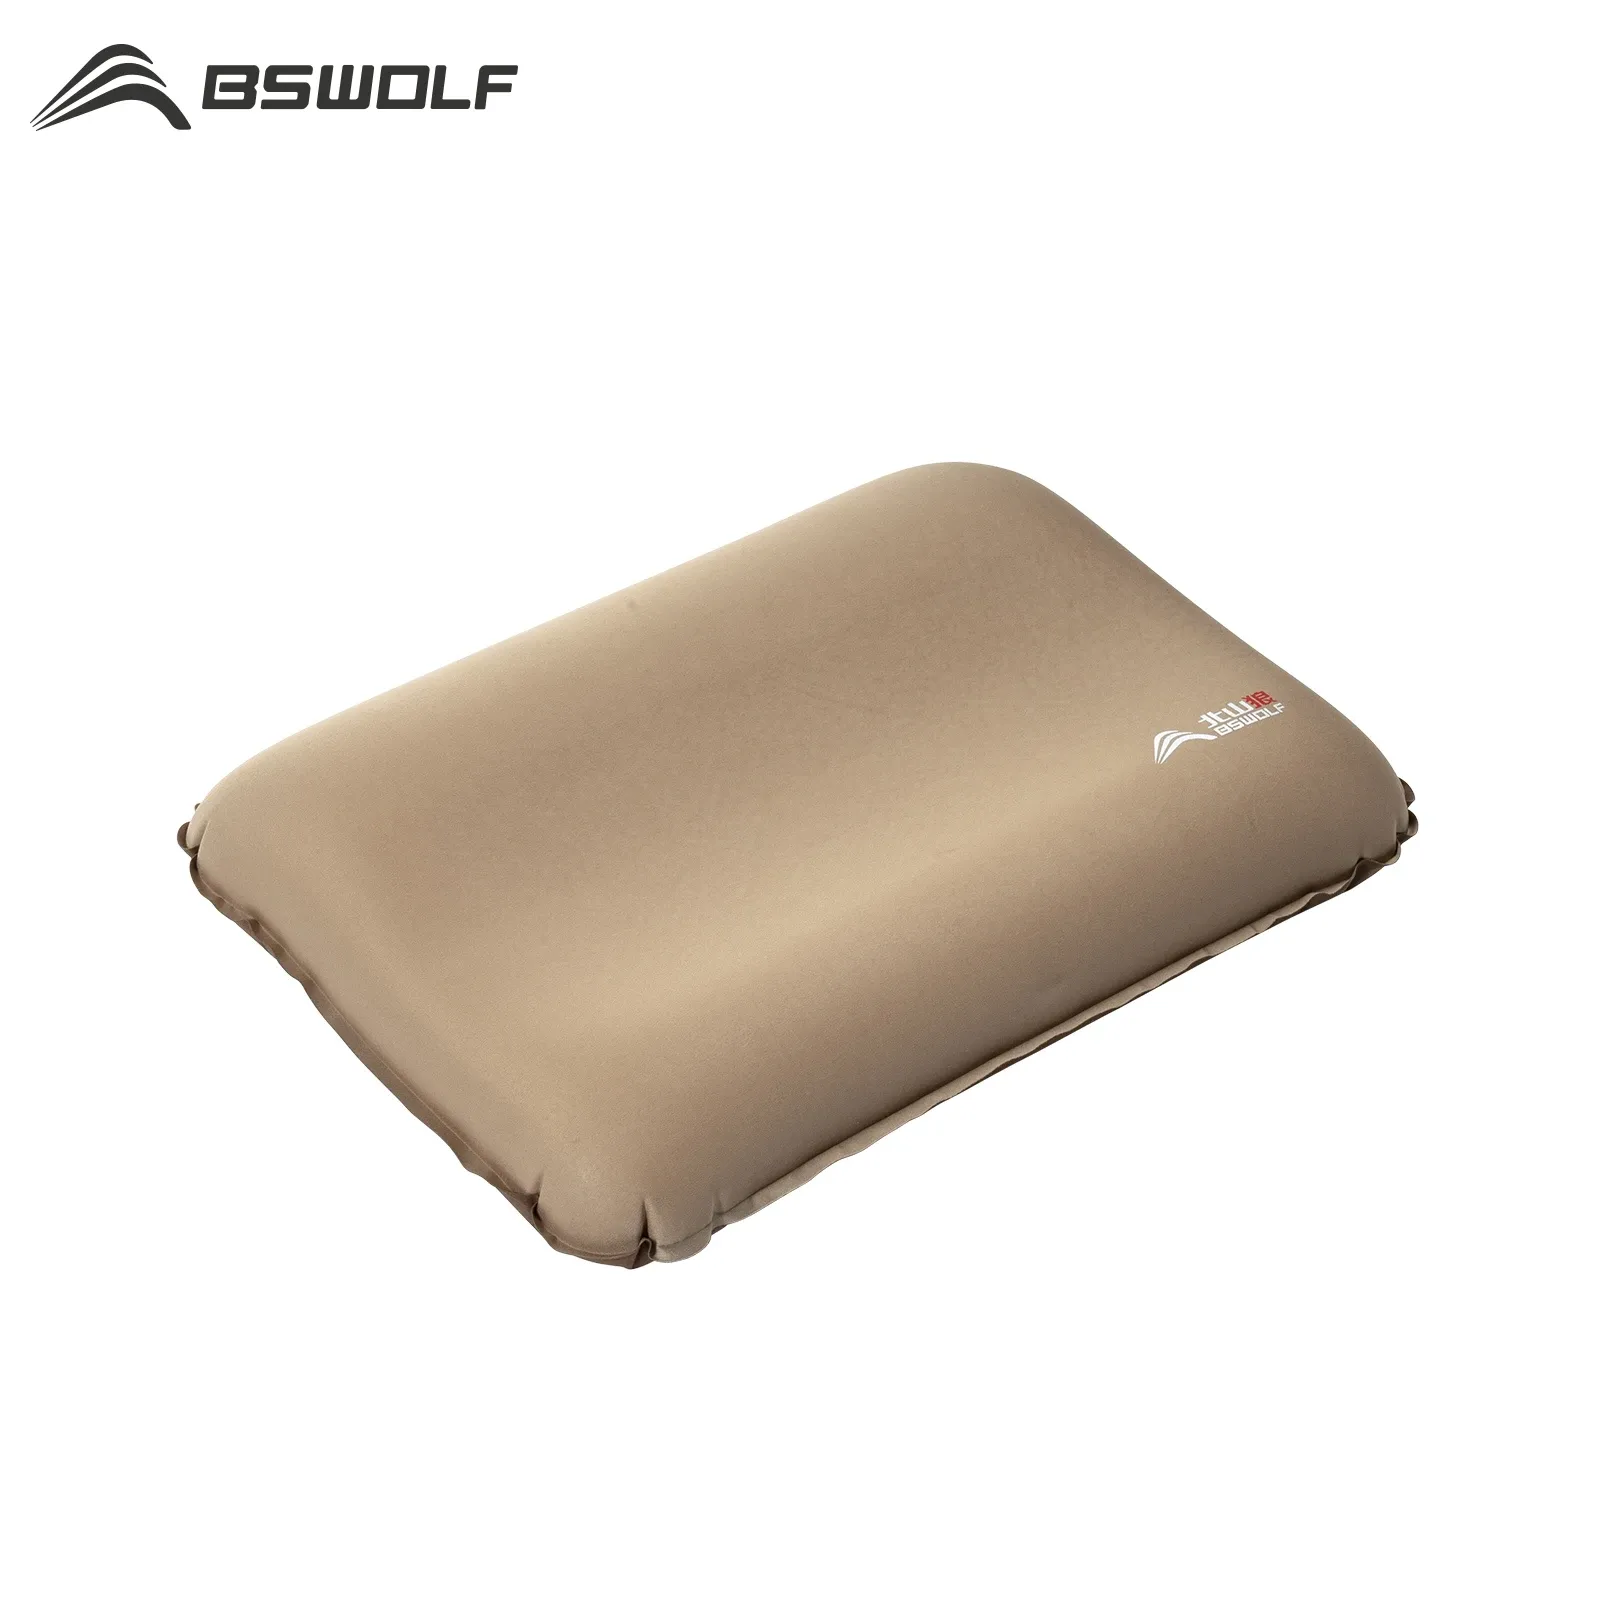 Gear Bswolf Automatisk Ierable Pillow Camping Air Pillow Ultralight Vandring Sovande kudde utomhus Komprimerbar resekudde